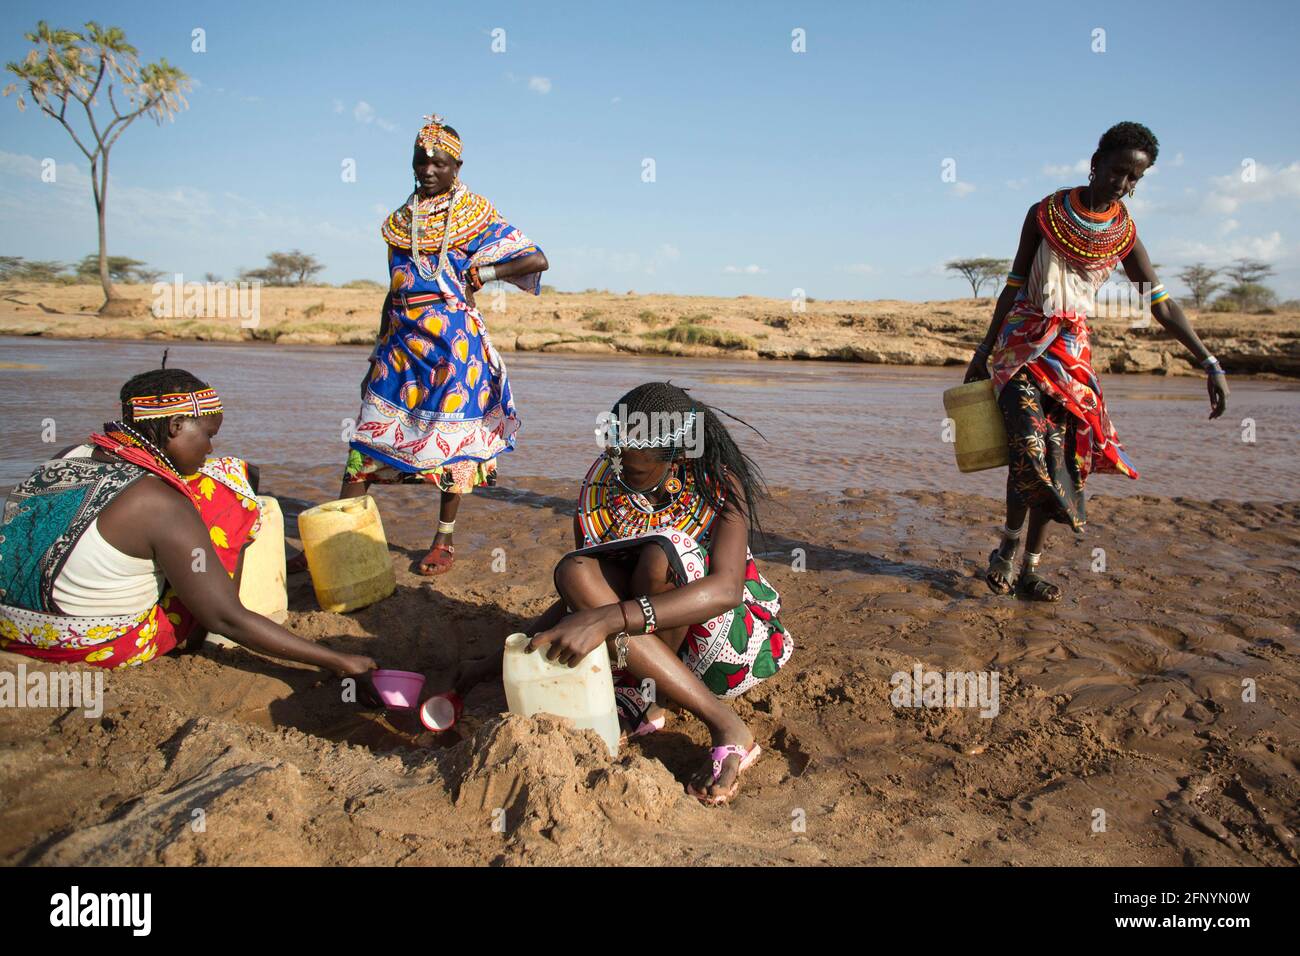 Le 19 février 2015, les femmes collectent l'eau d'une rivière près du village d'Umoja à Samburu, au Kenya. Banque D'Images